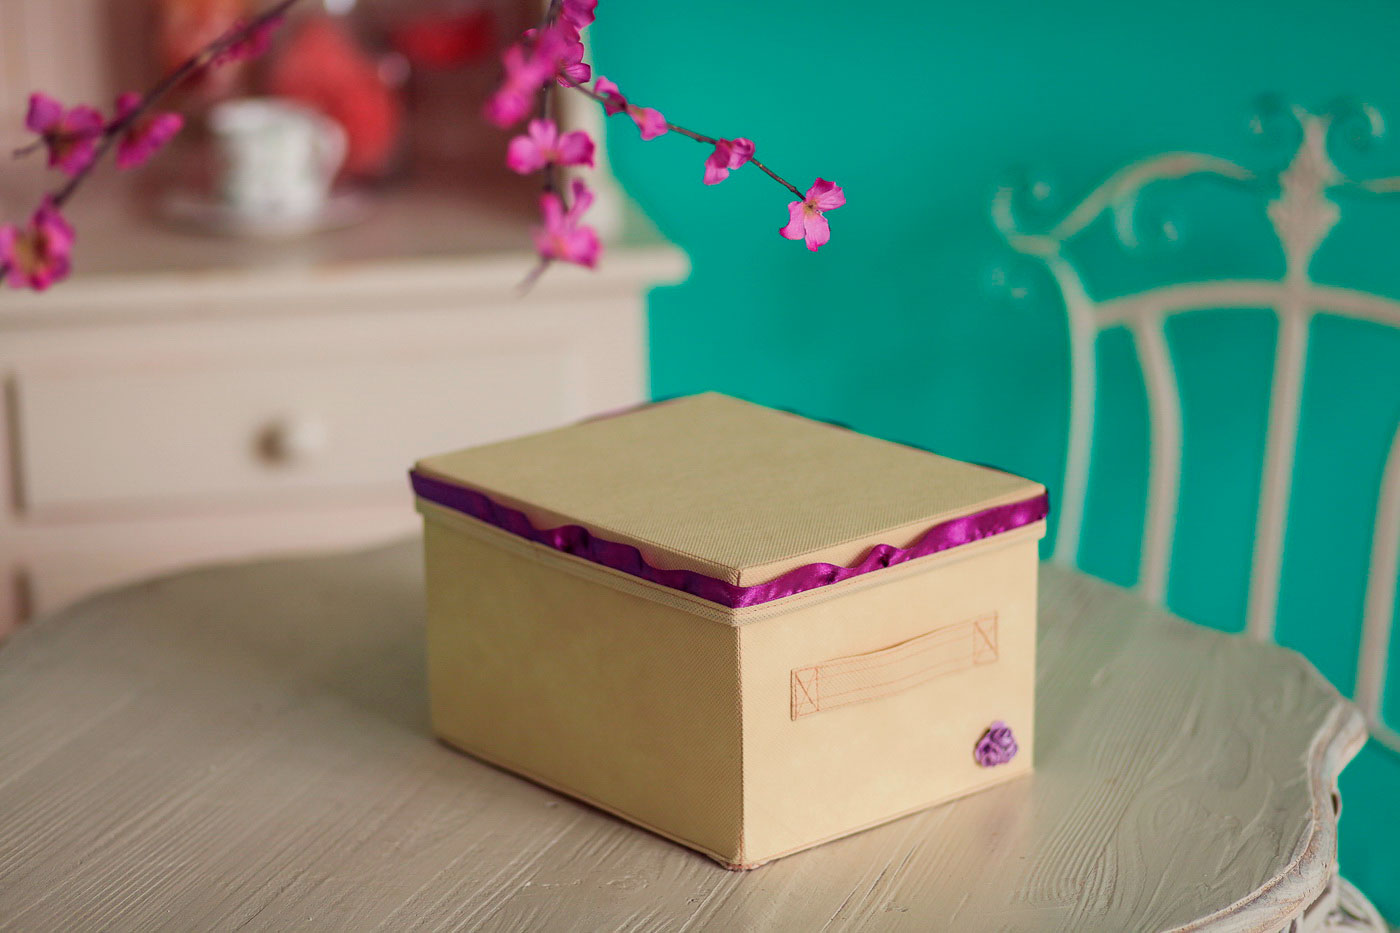 Коробка для хранения Средняя "Sugar Roses" с крышкой - ящик для хранения